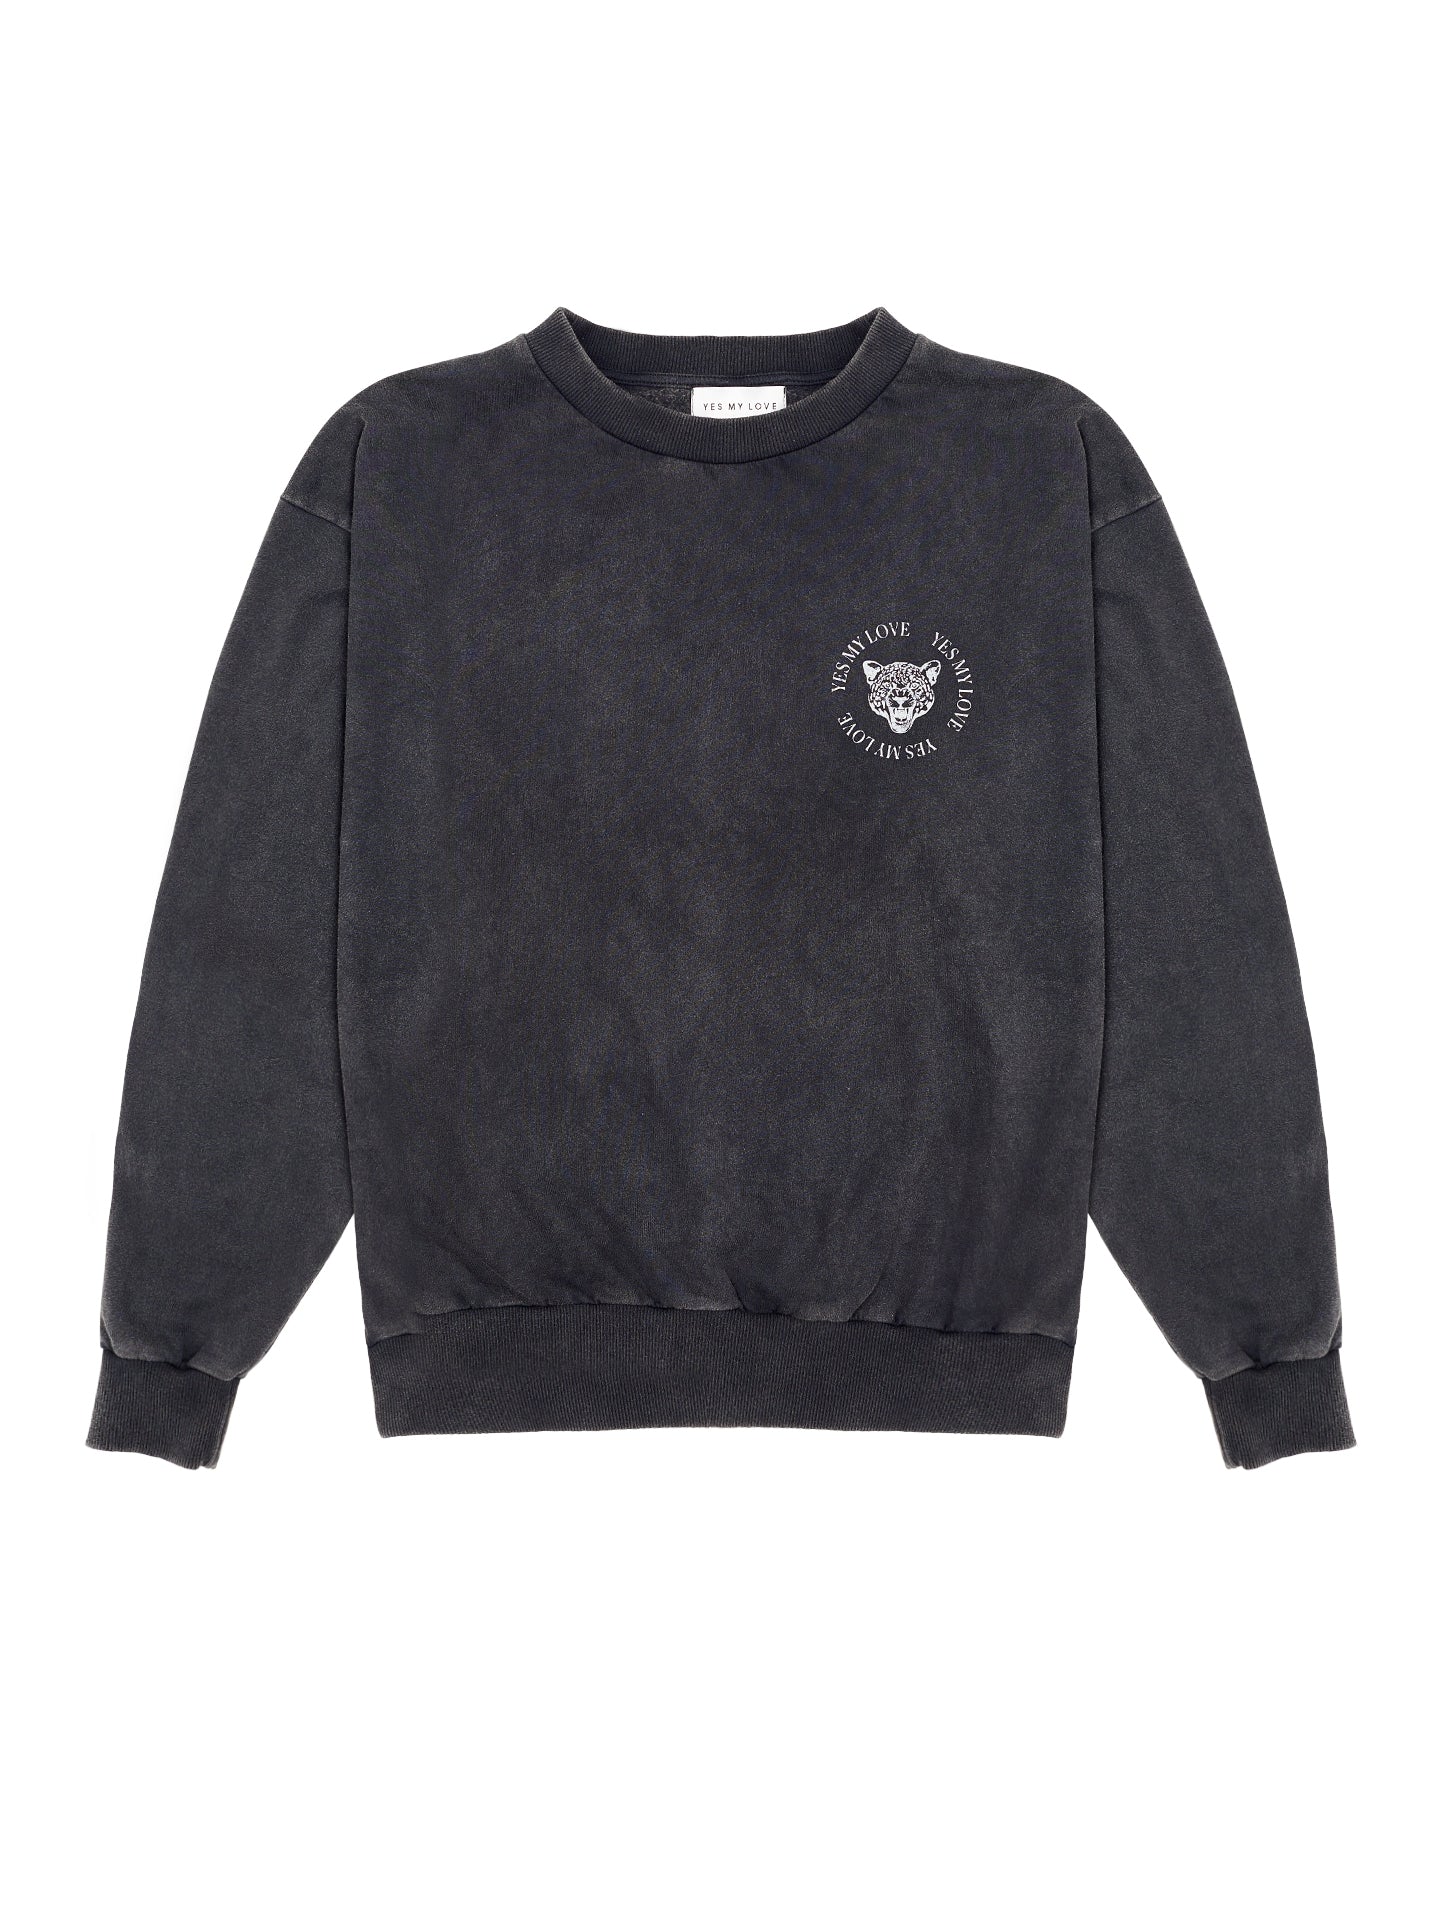 Leohead Sweater - Vintage Black